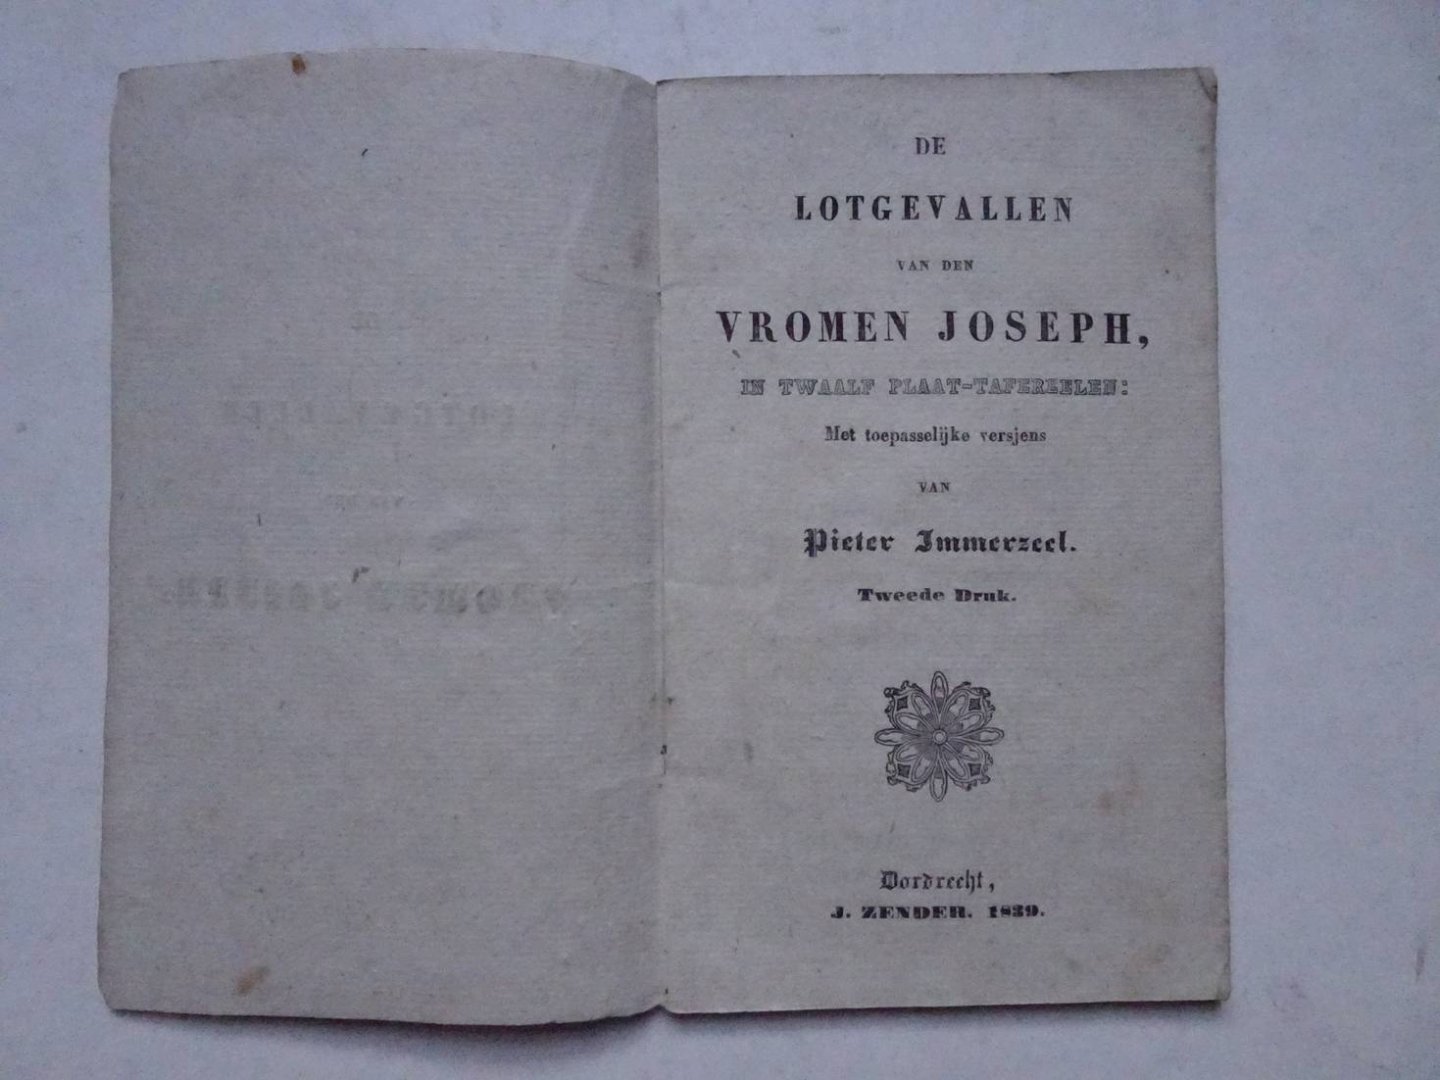 Immerzeel, Pieter. - De lotgevallen van den vromen Joseph, in twaalf plaat-tafereelen, met toepasselijke versjes van Pieter Immerzeel.